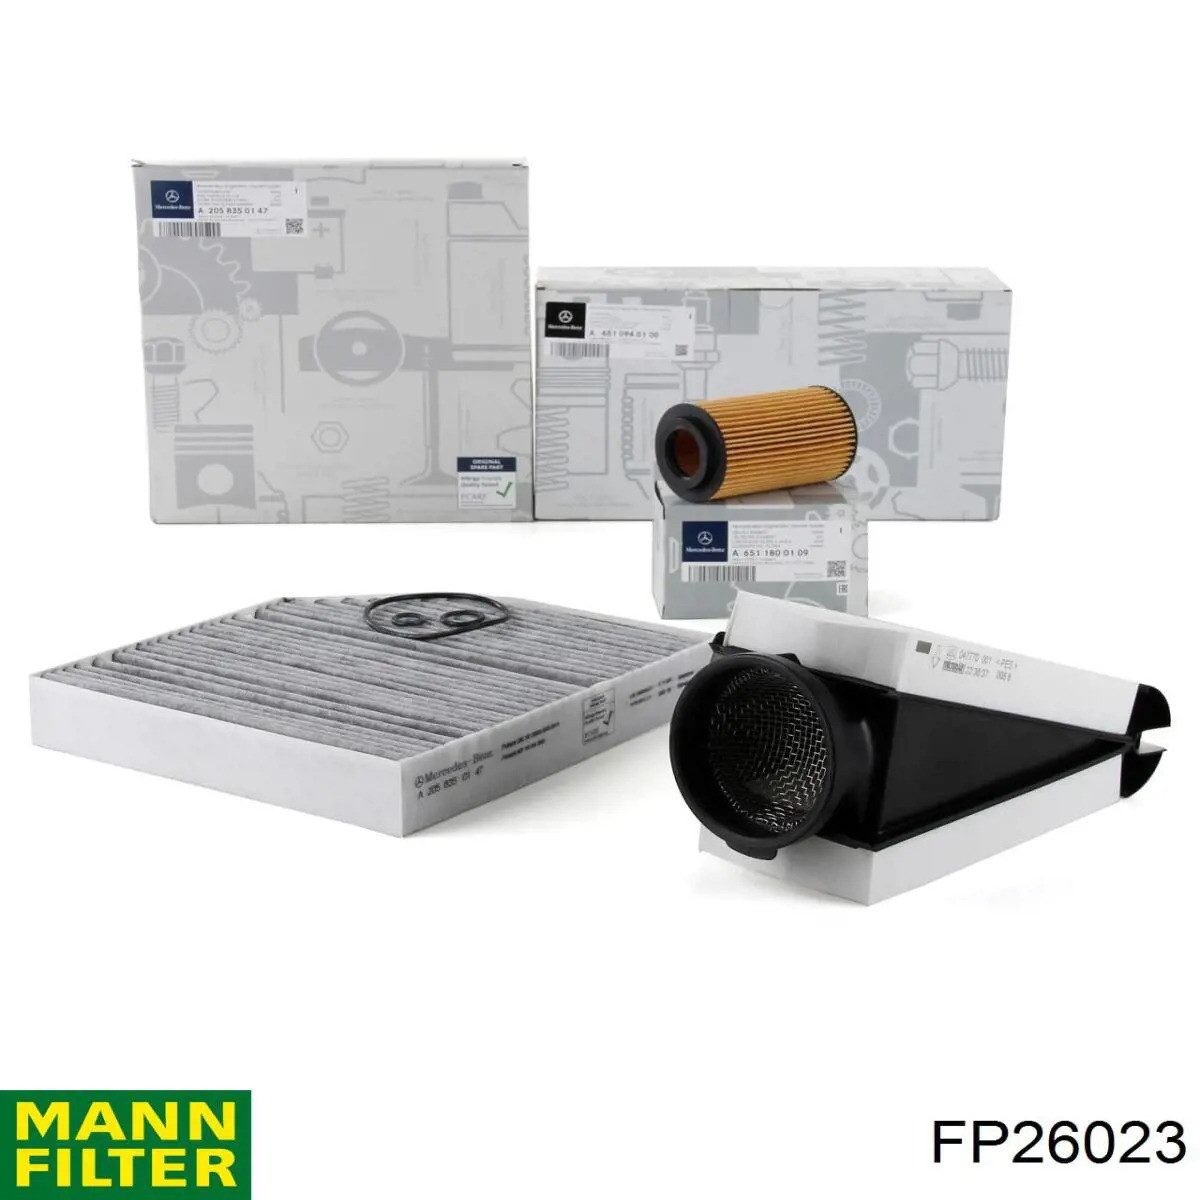 Filtro de habitáculo FP26023 Mann-Filter